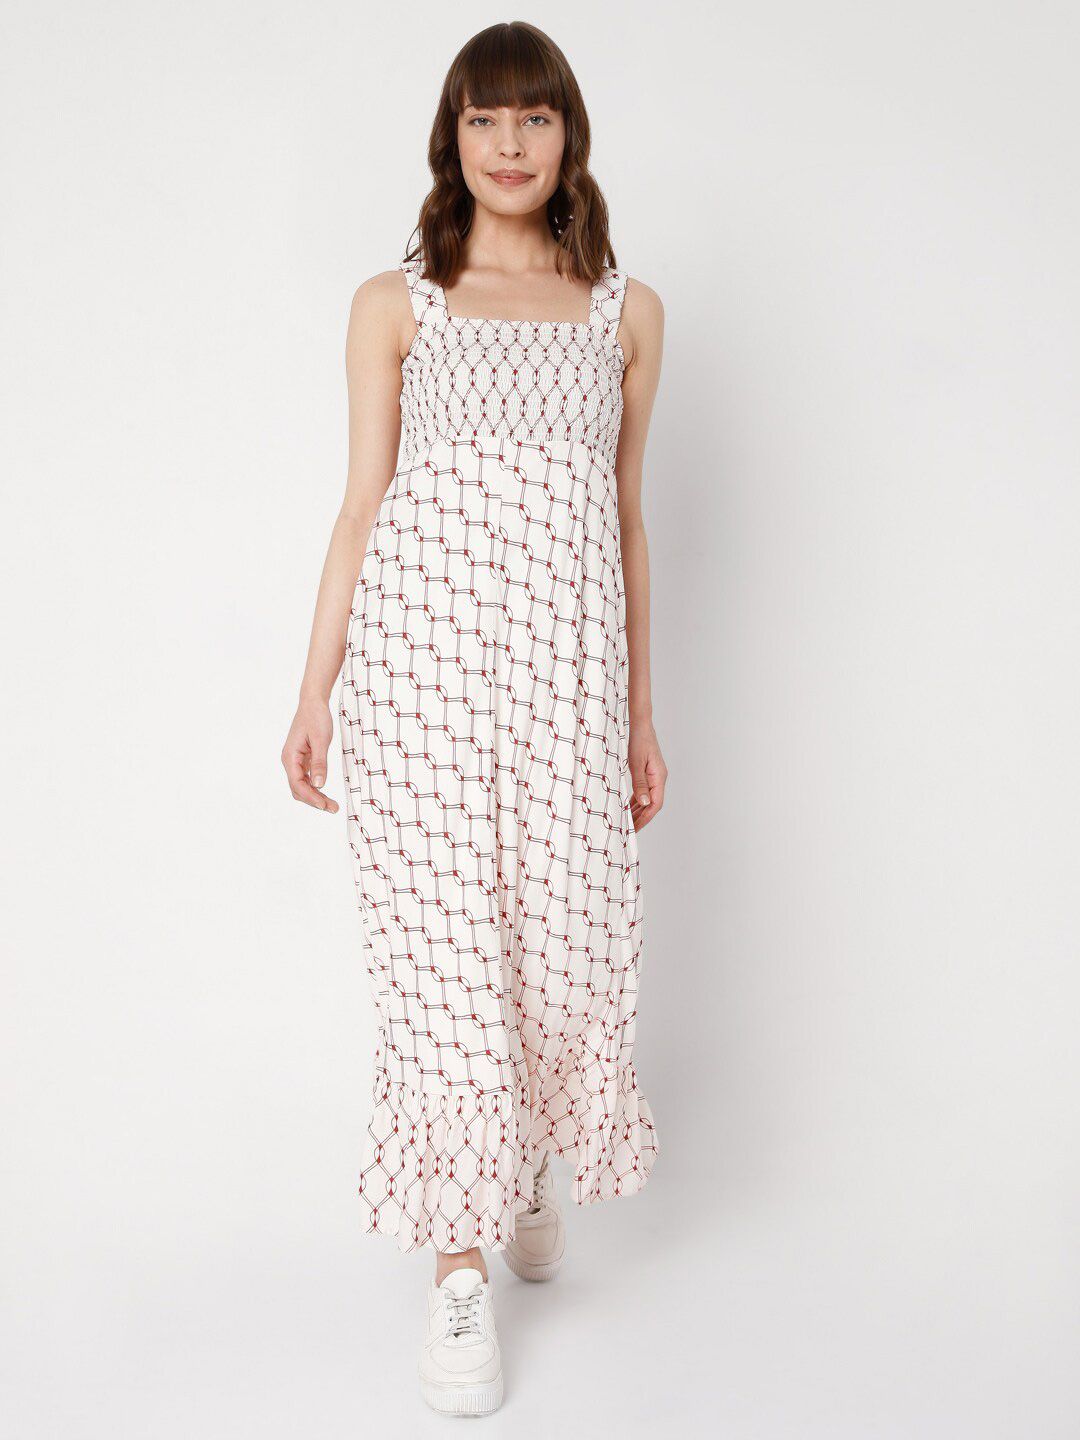 Vero Moda White Maxi Dress Price in India